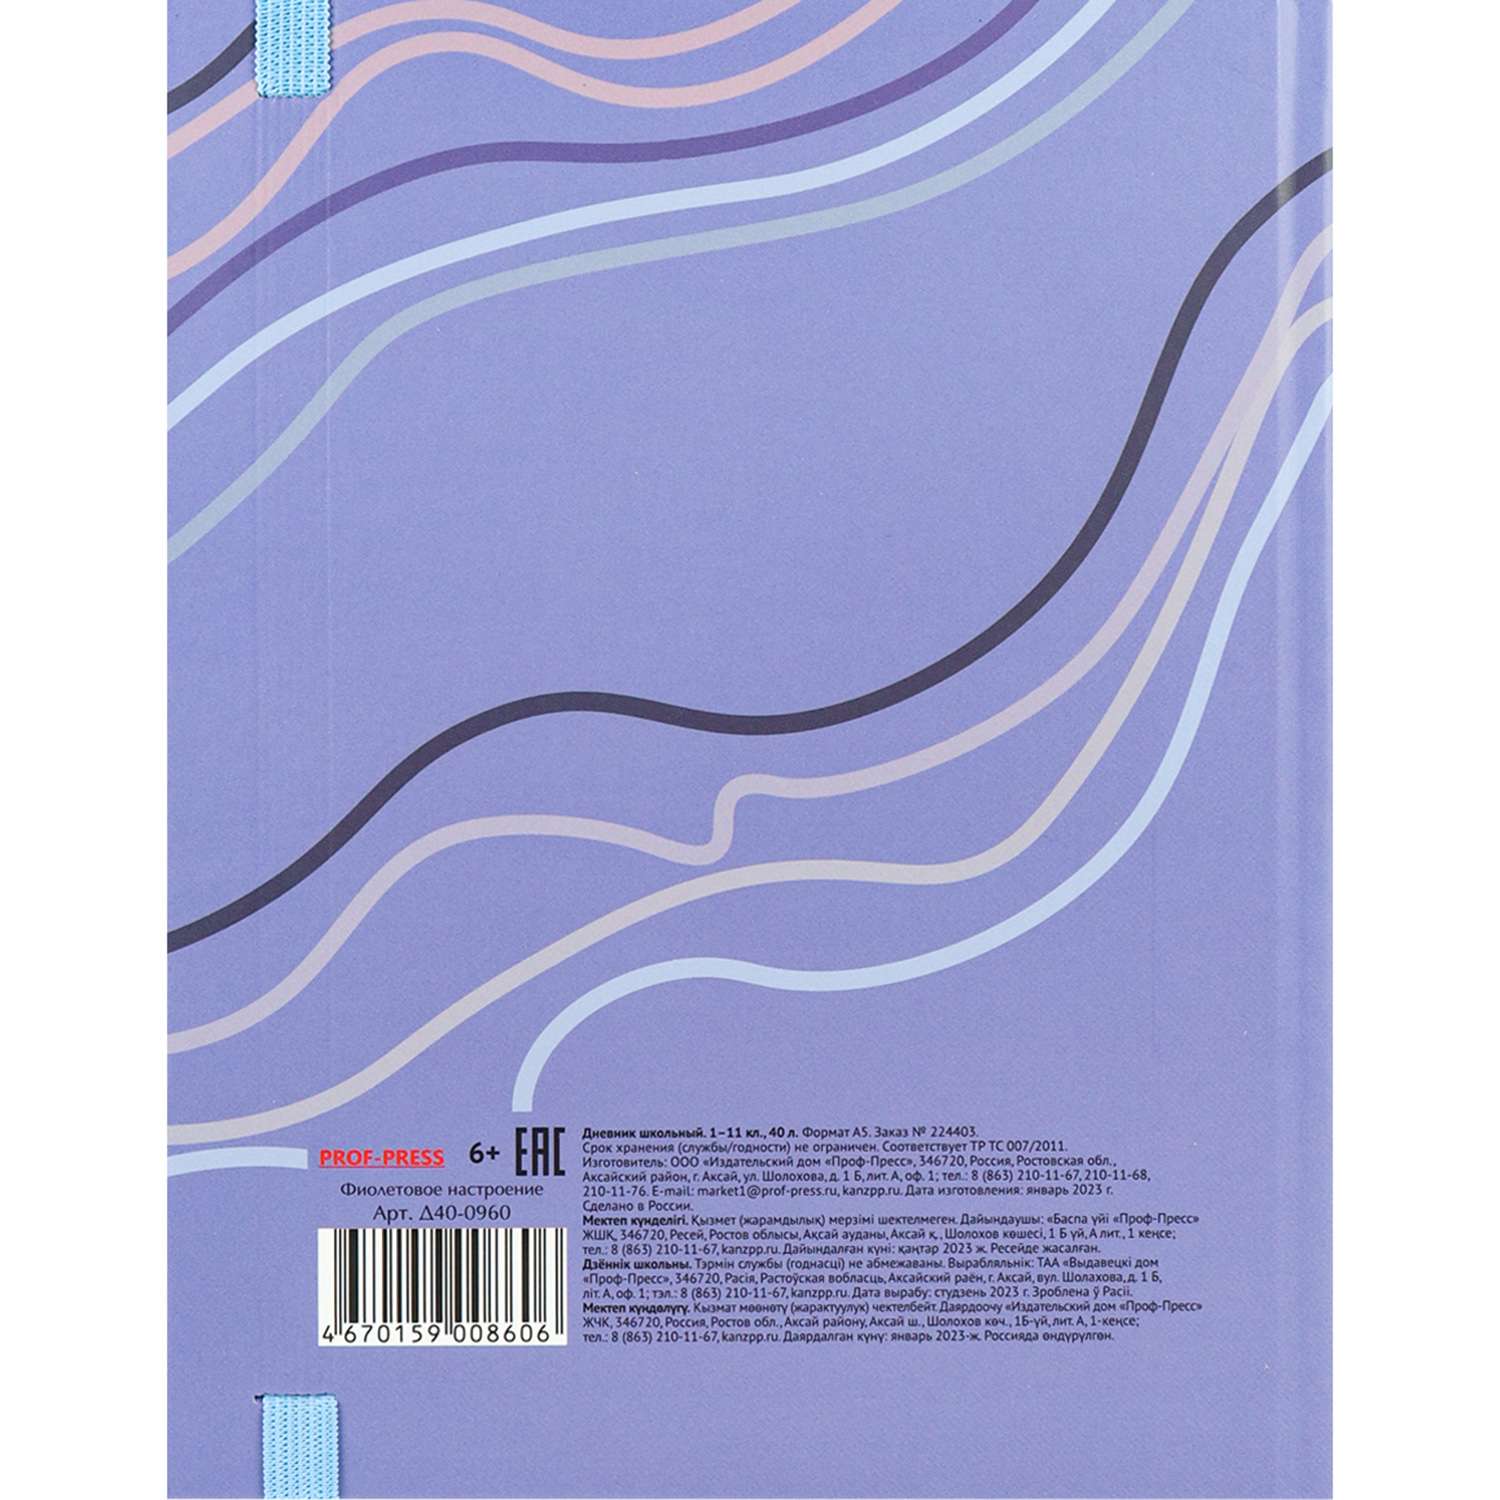 Дневник школьный Prof-Press фиолетовое настроение 40 листов универсальный обложка 7бц - фото 6